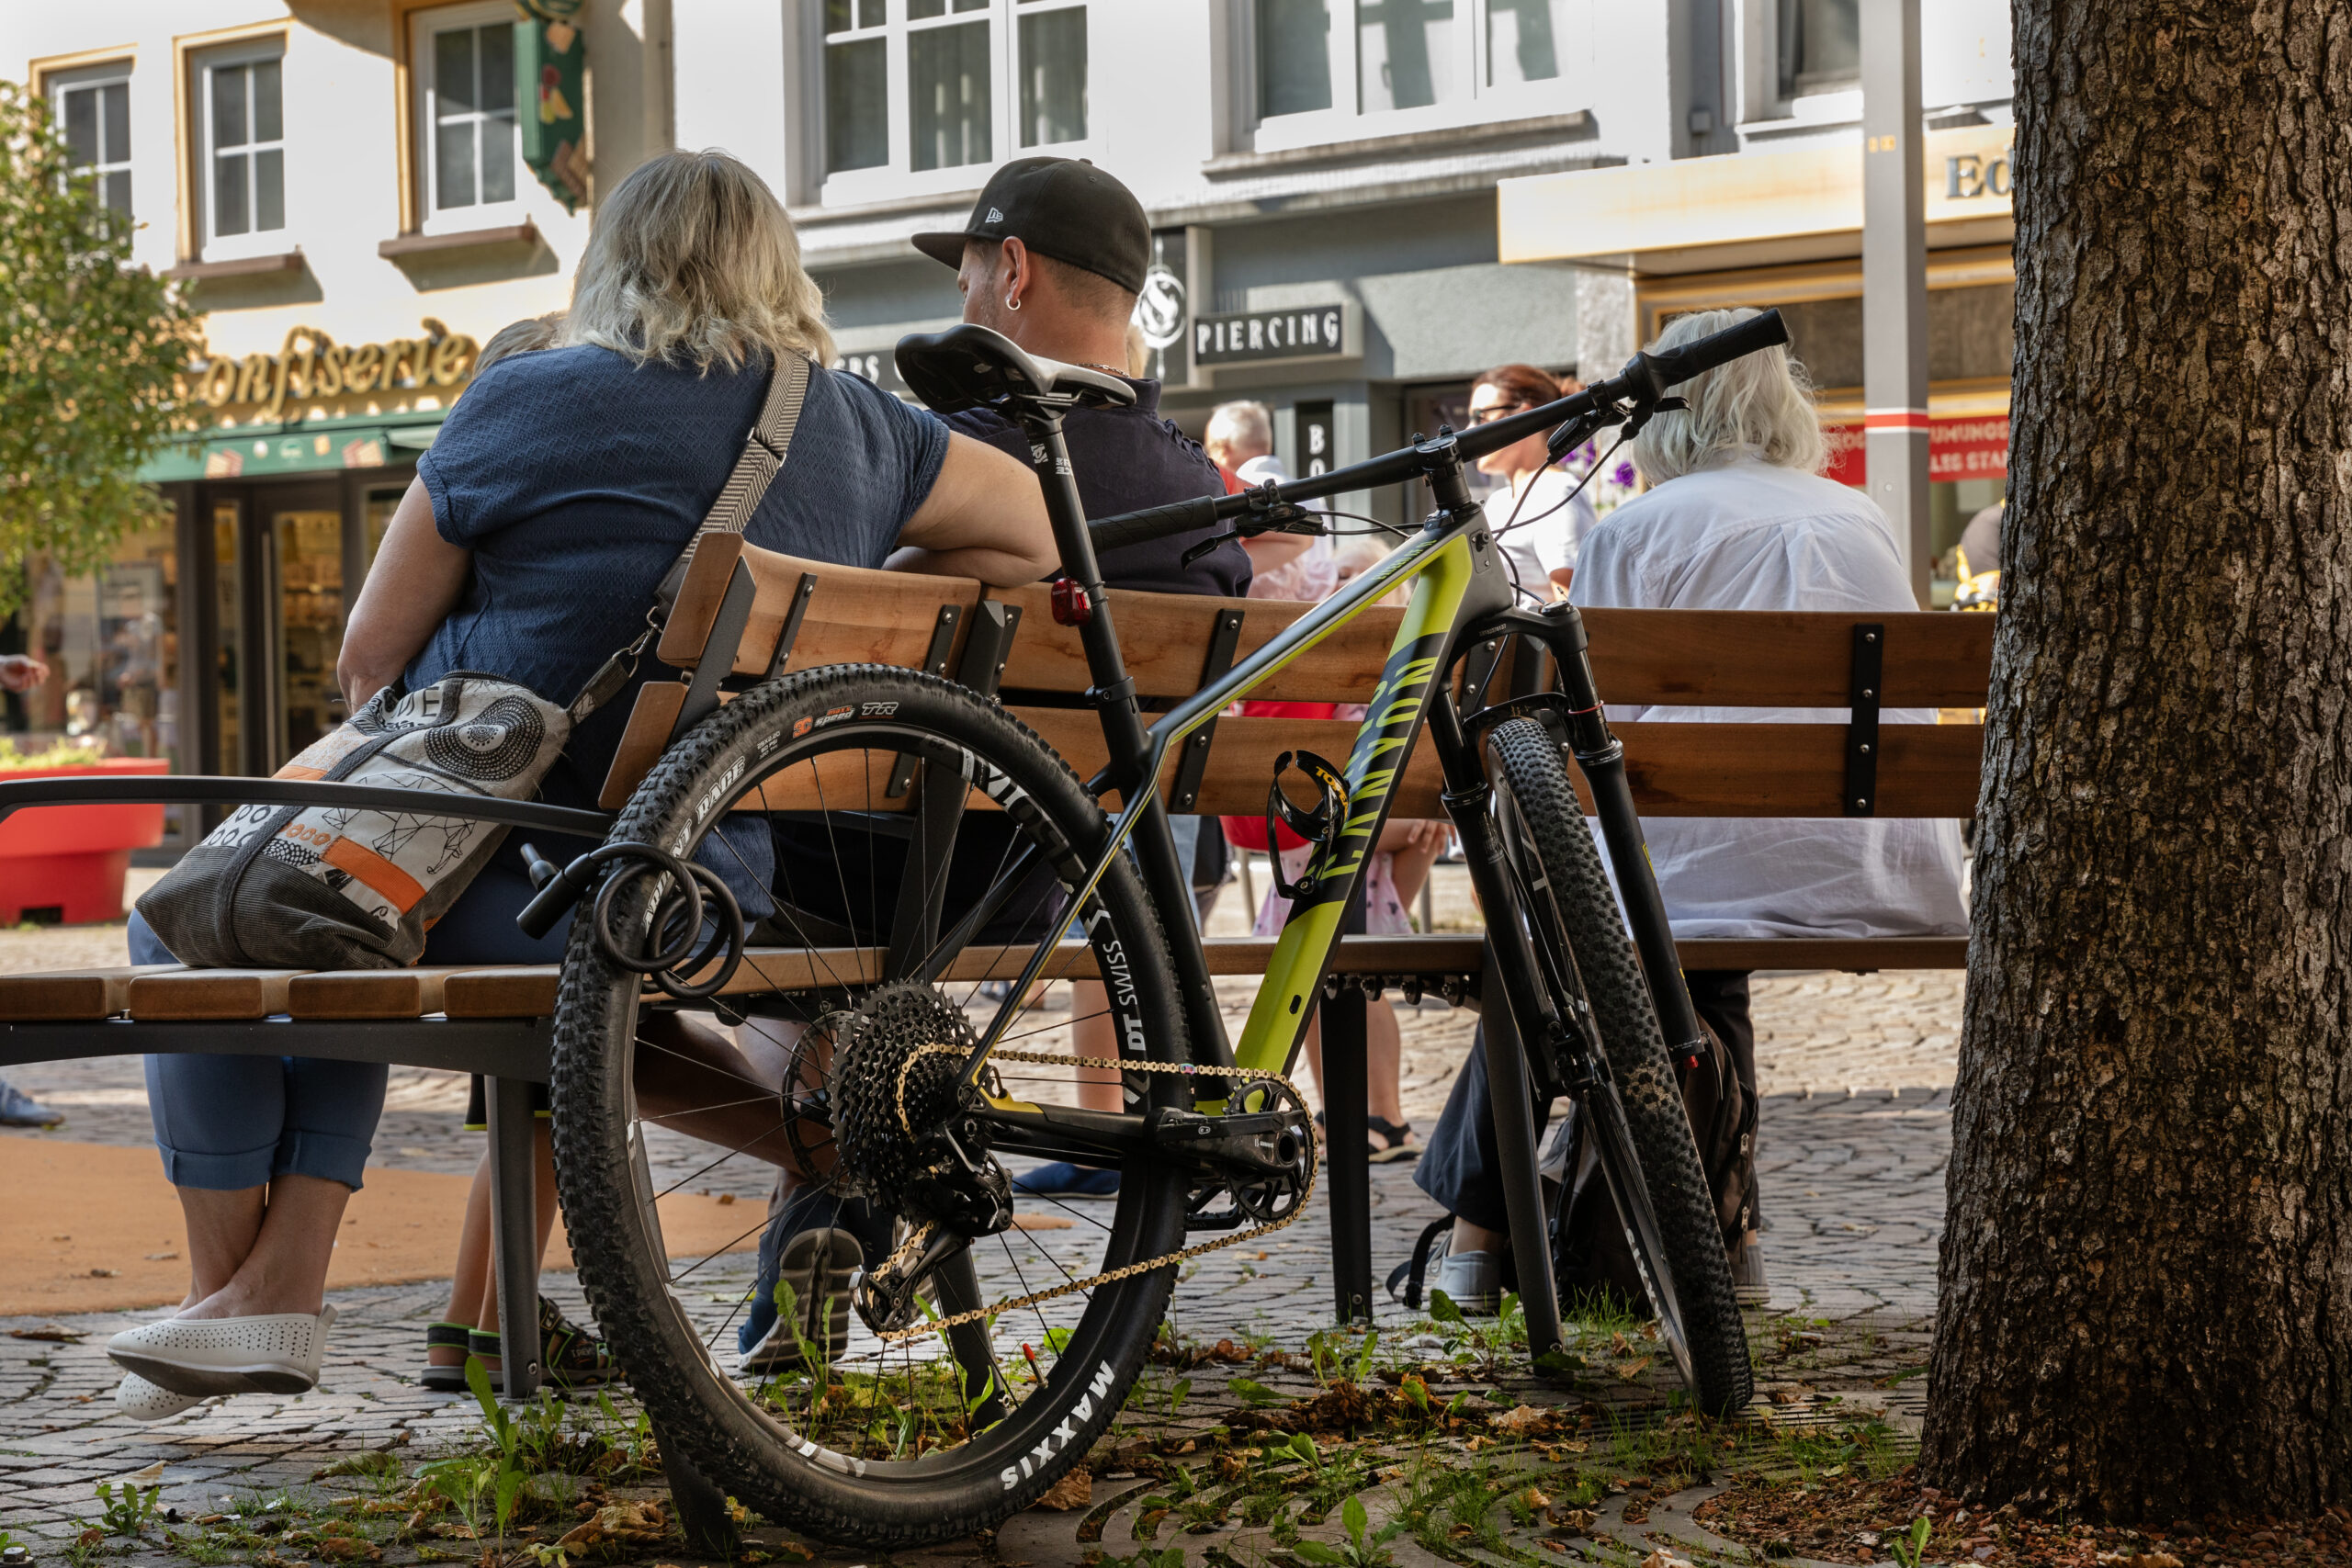 Fotografie eines Fahrrads angeschlossen an einer Bank auf der zwei Personen sitzen